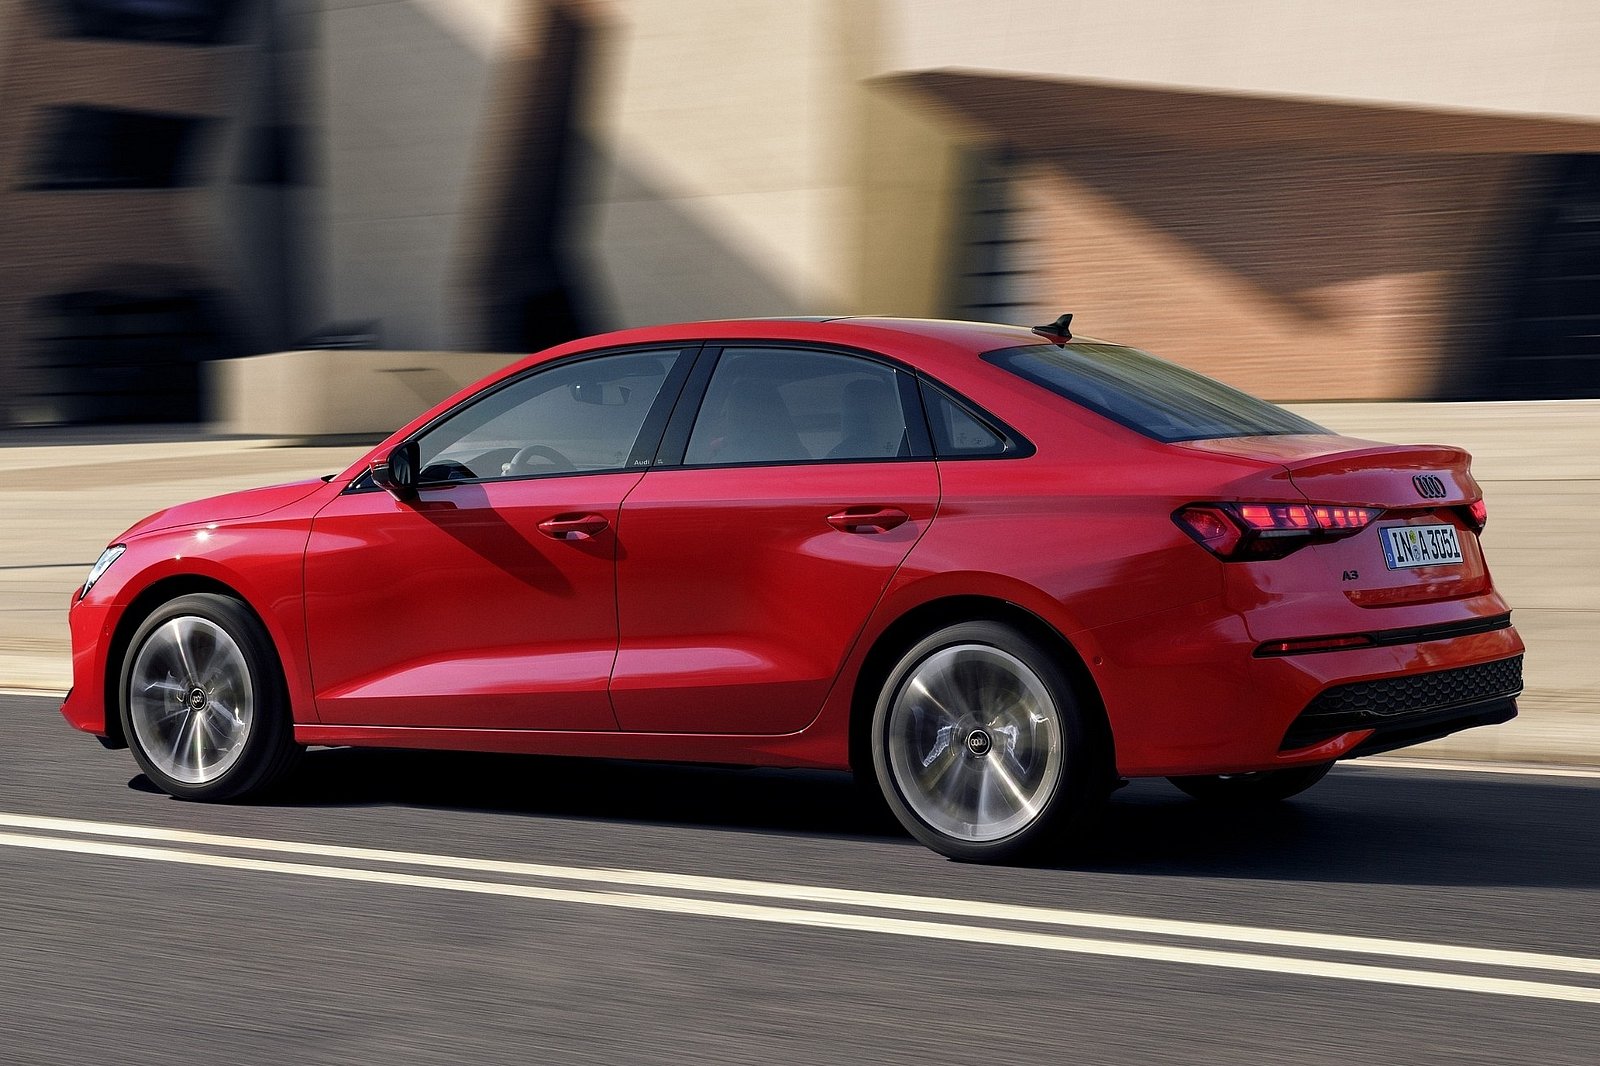 Audi A3 відкриє доступ до опції за підпискою, як от адаптивний круіз-контроль